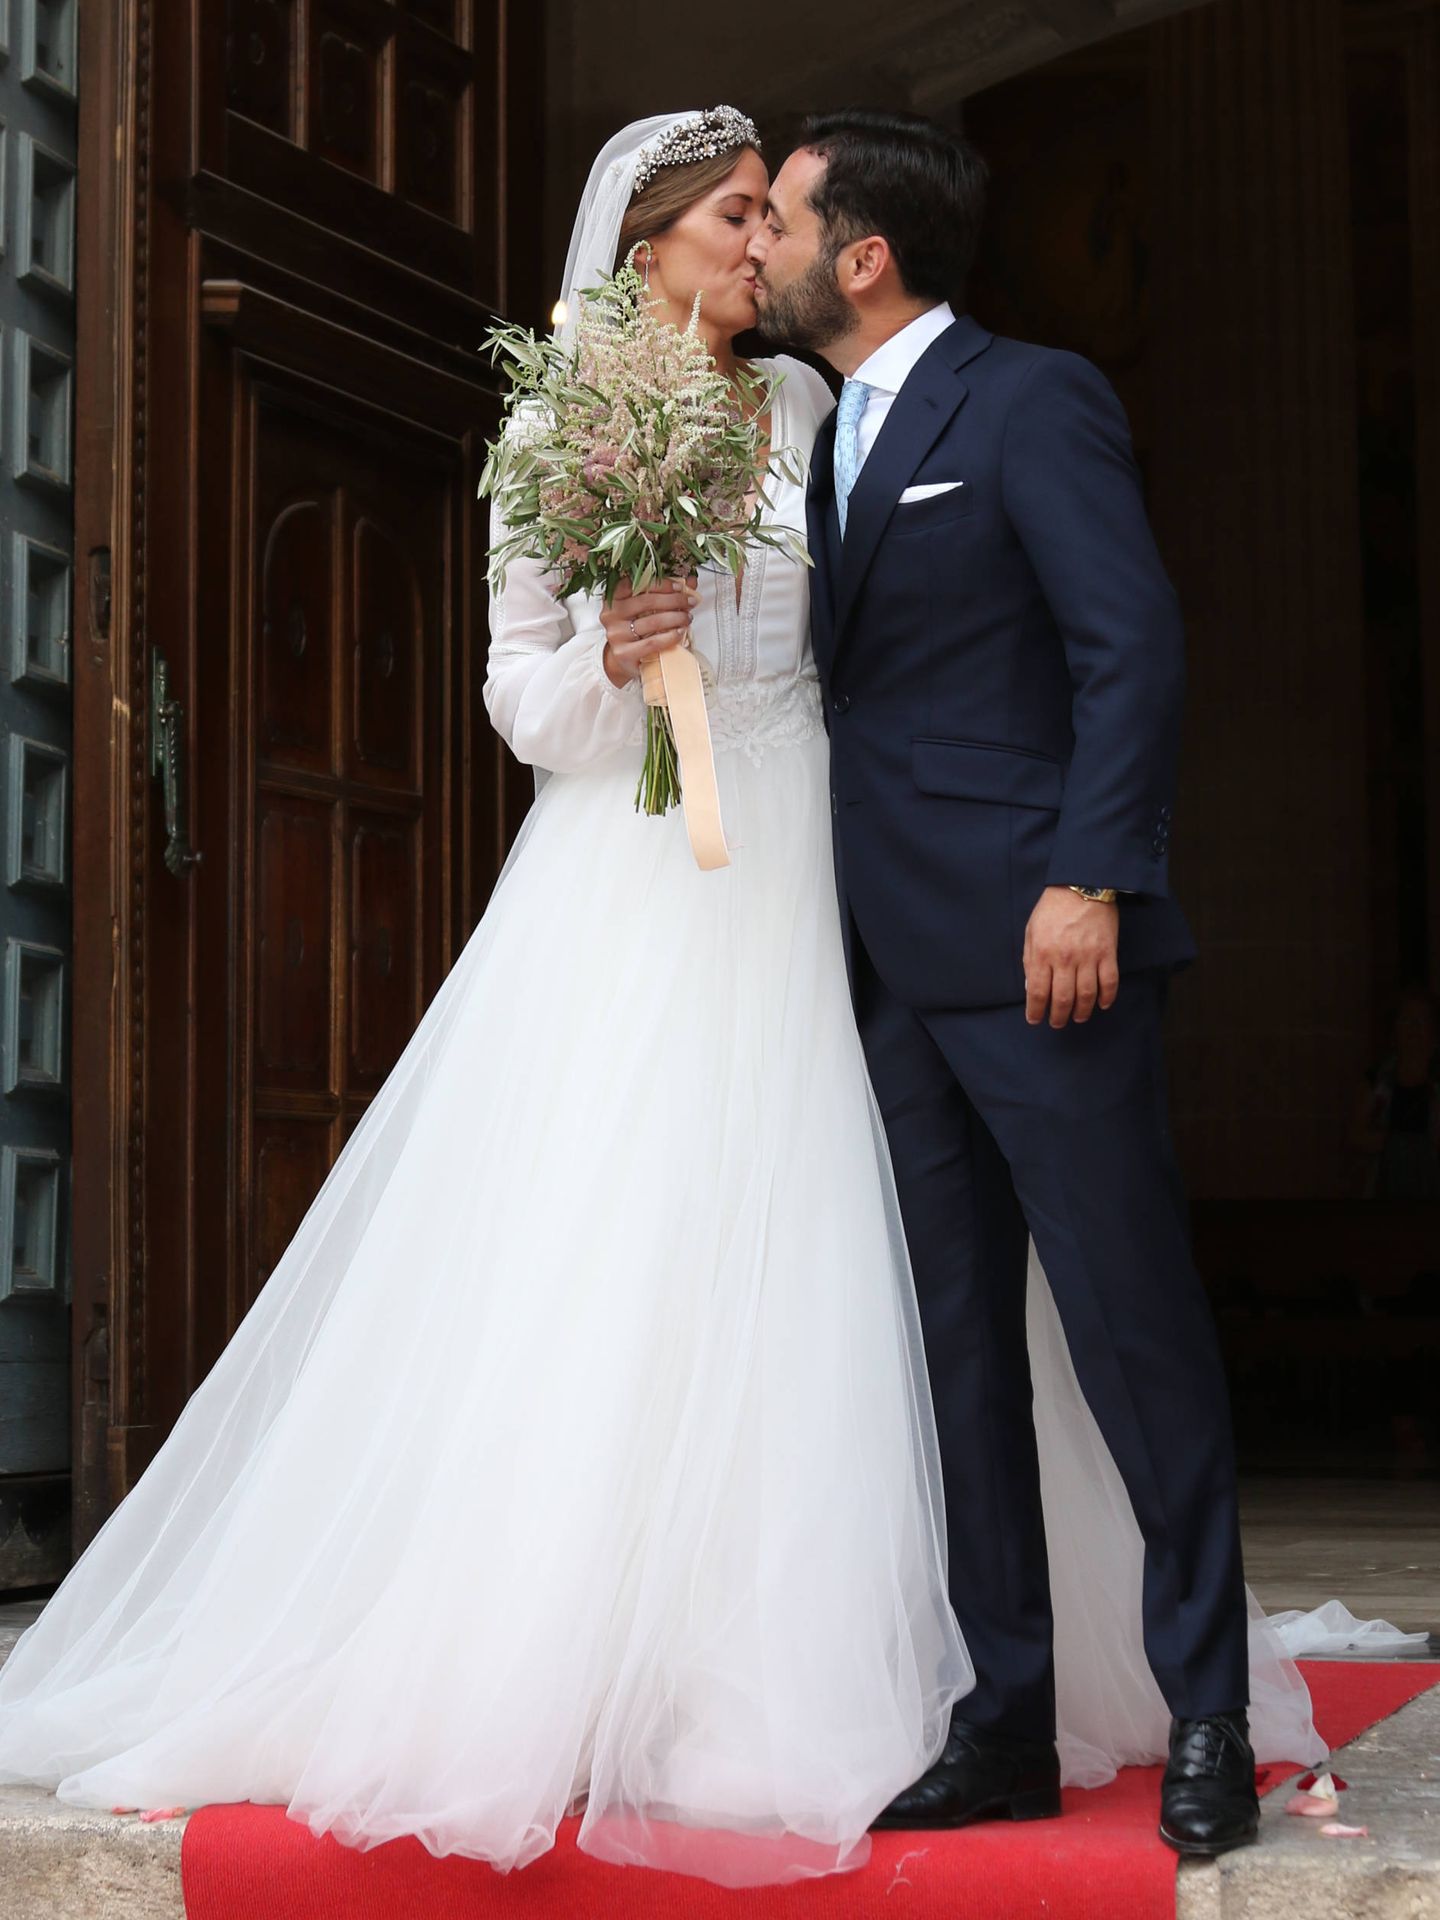 Dámaso González y Miriam Lanza recién casados. (Lagencia Grosby/Ángela Mora)